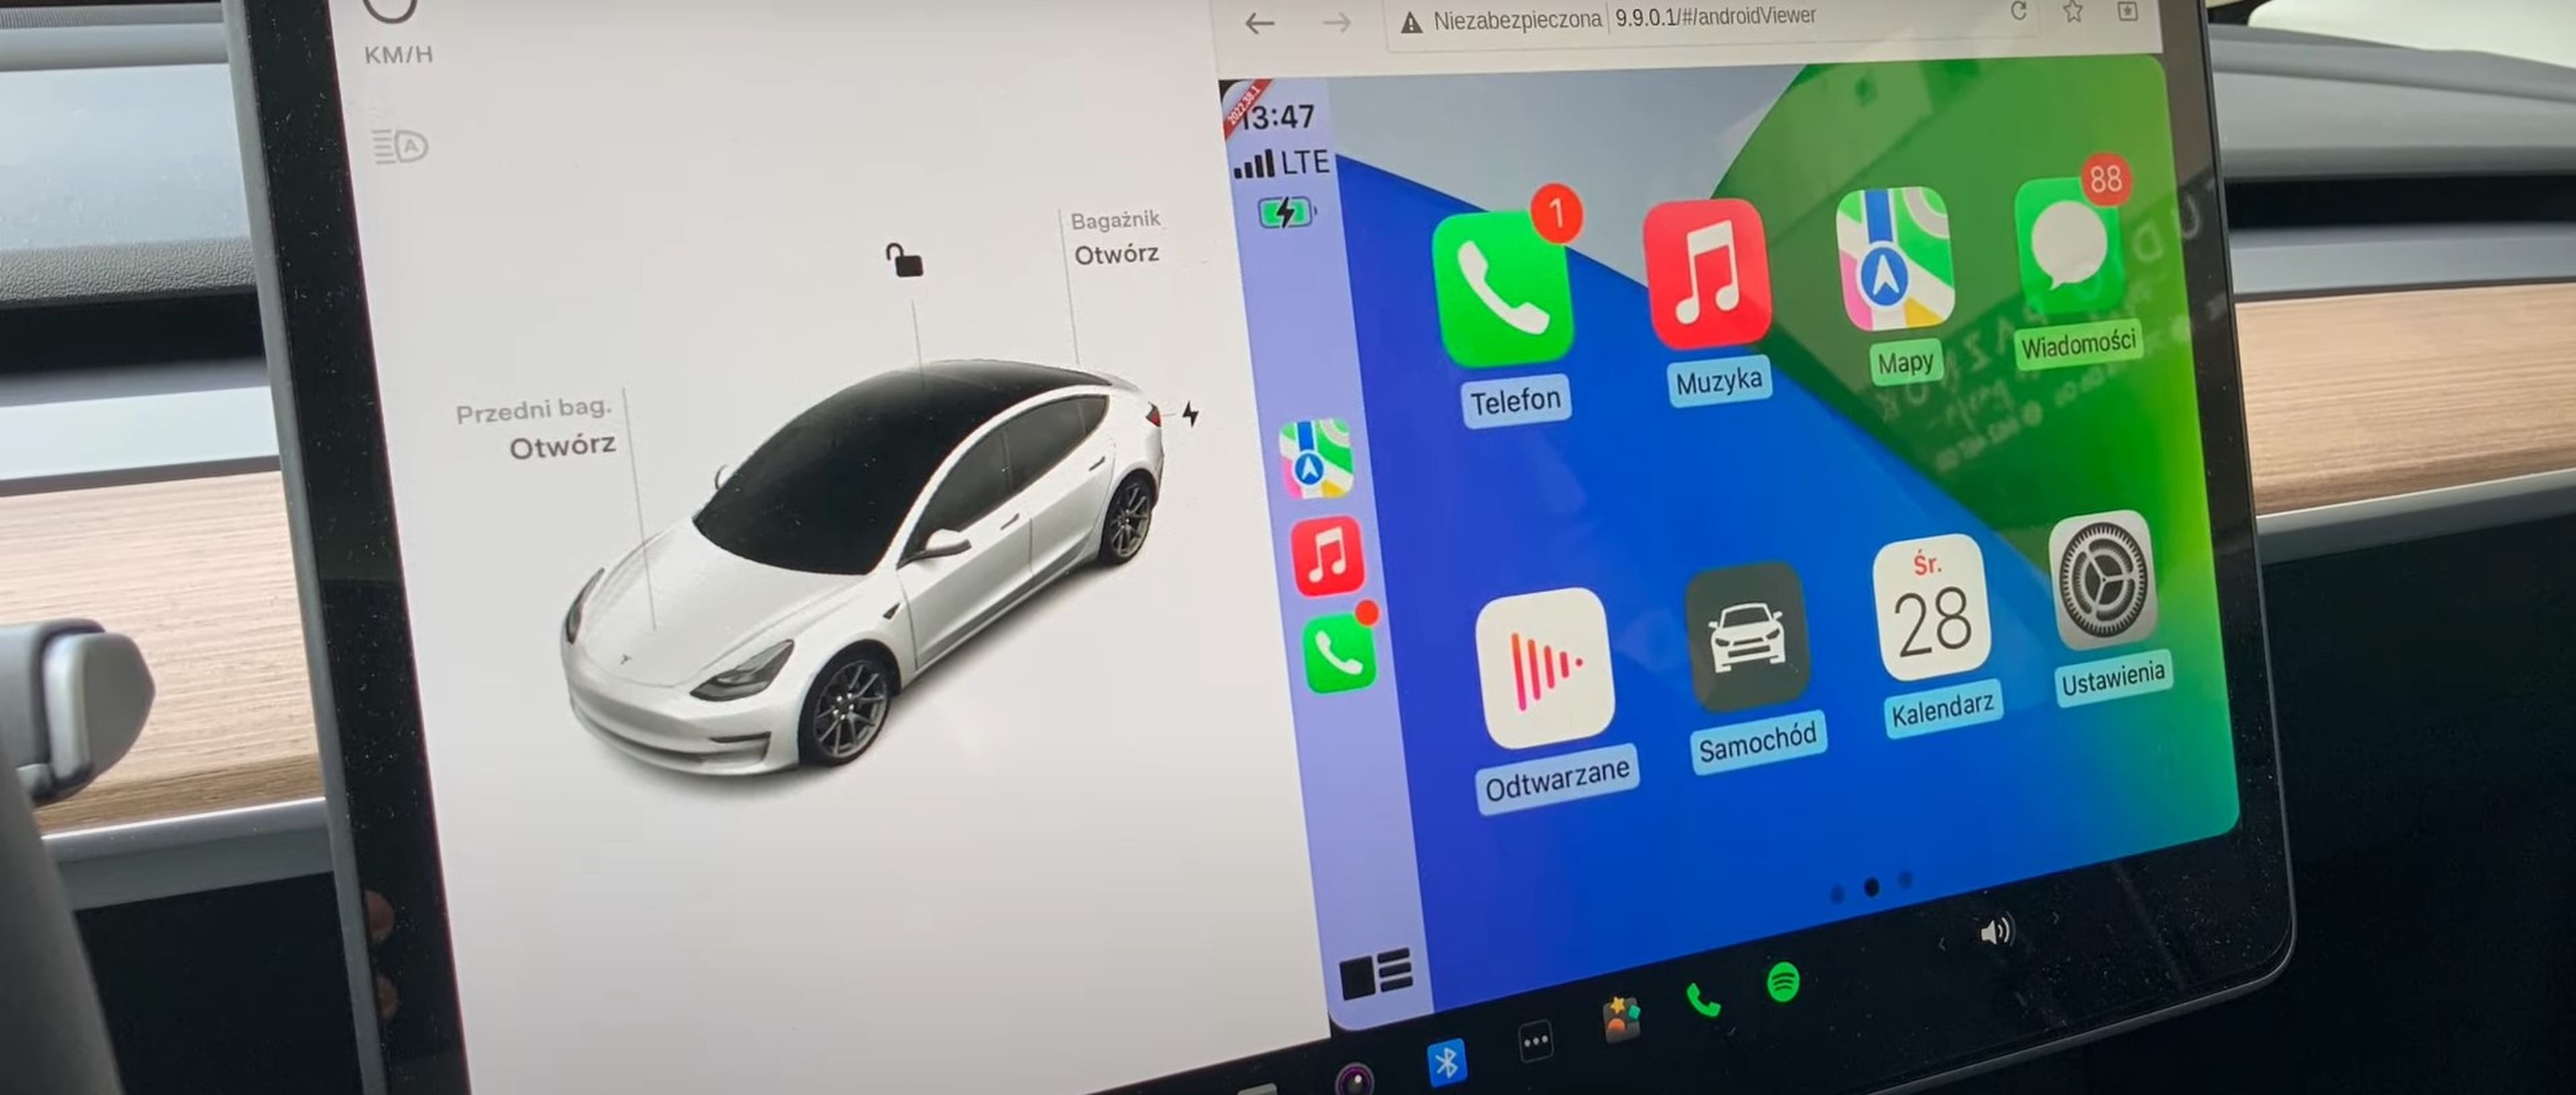 Ya puedes tener Android Auto y CarPlay en tu coche Tesla gracias a este hack